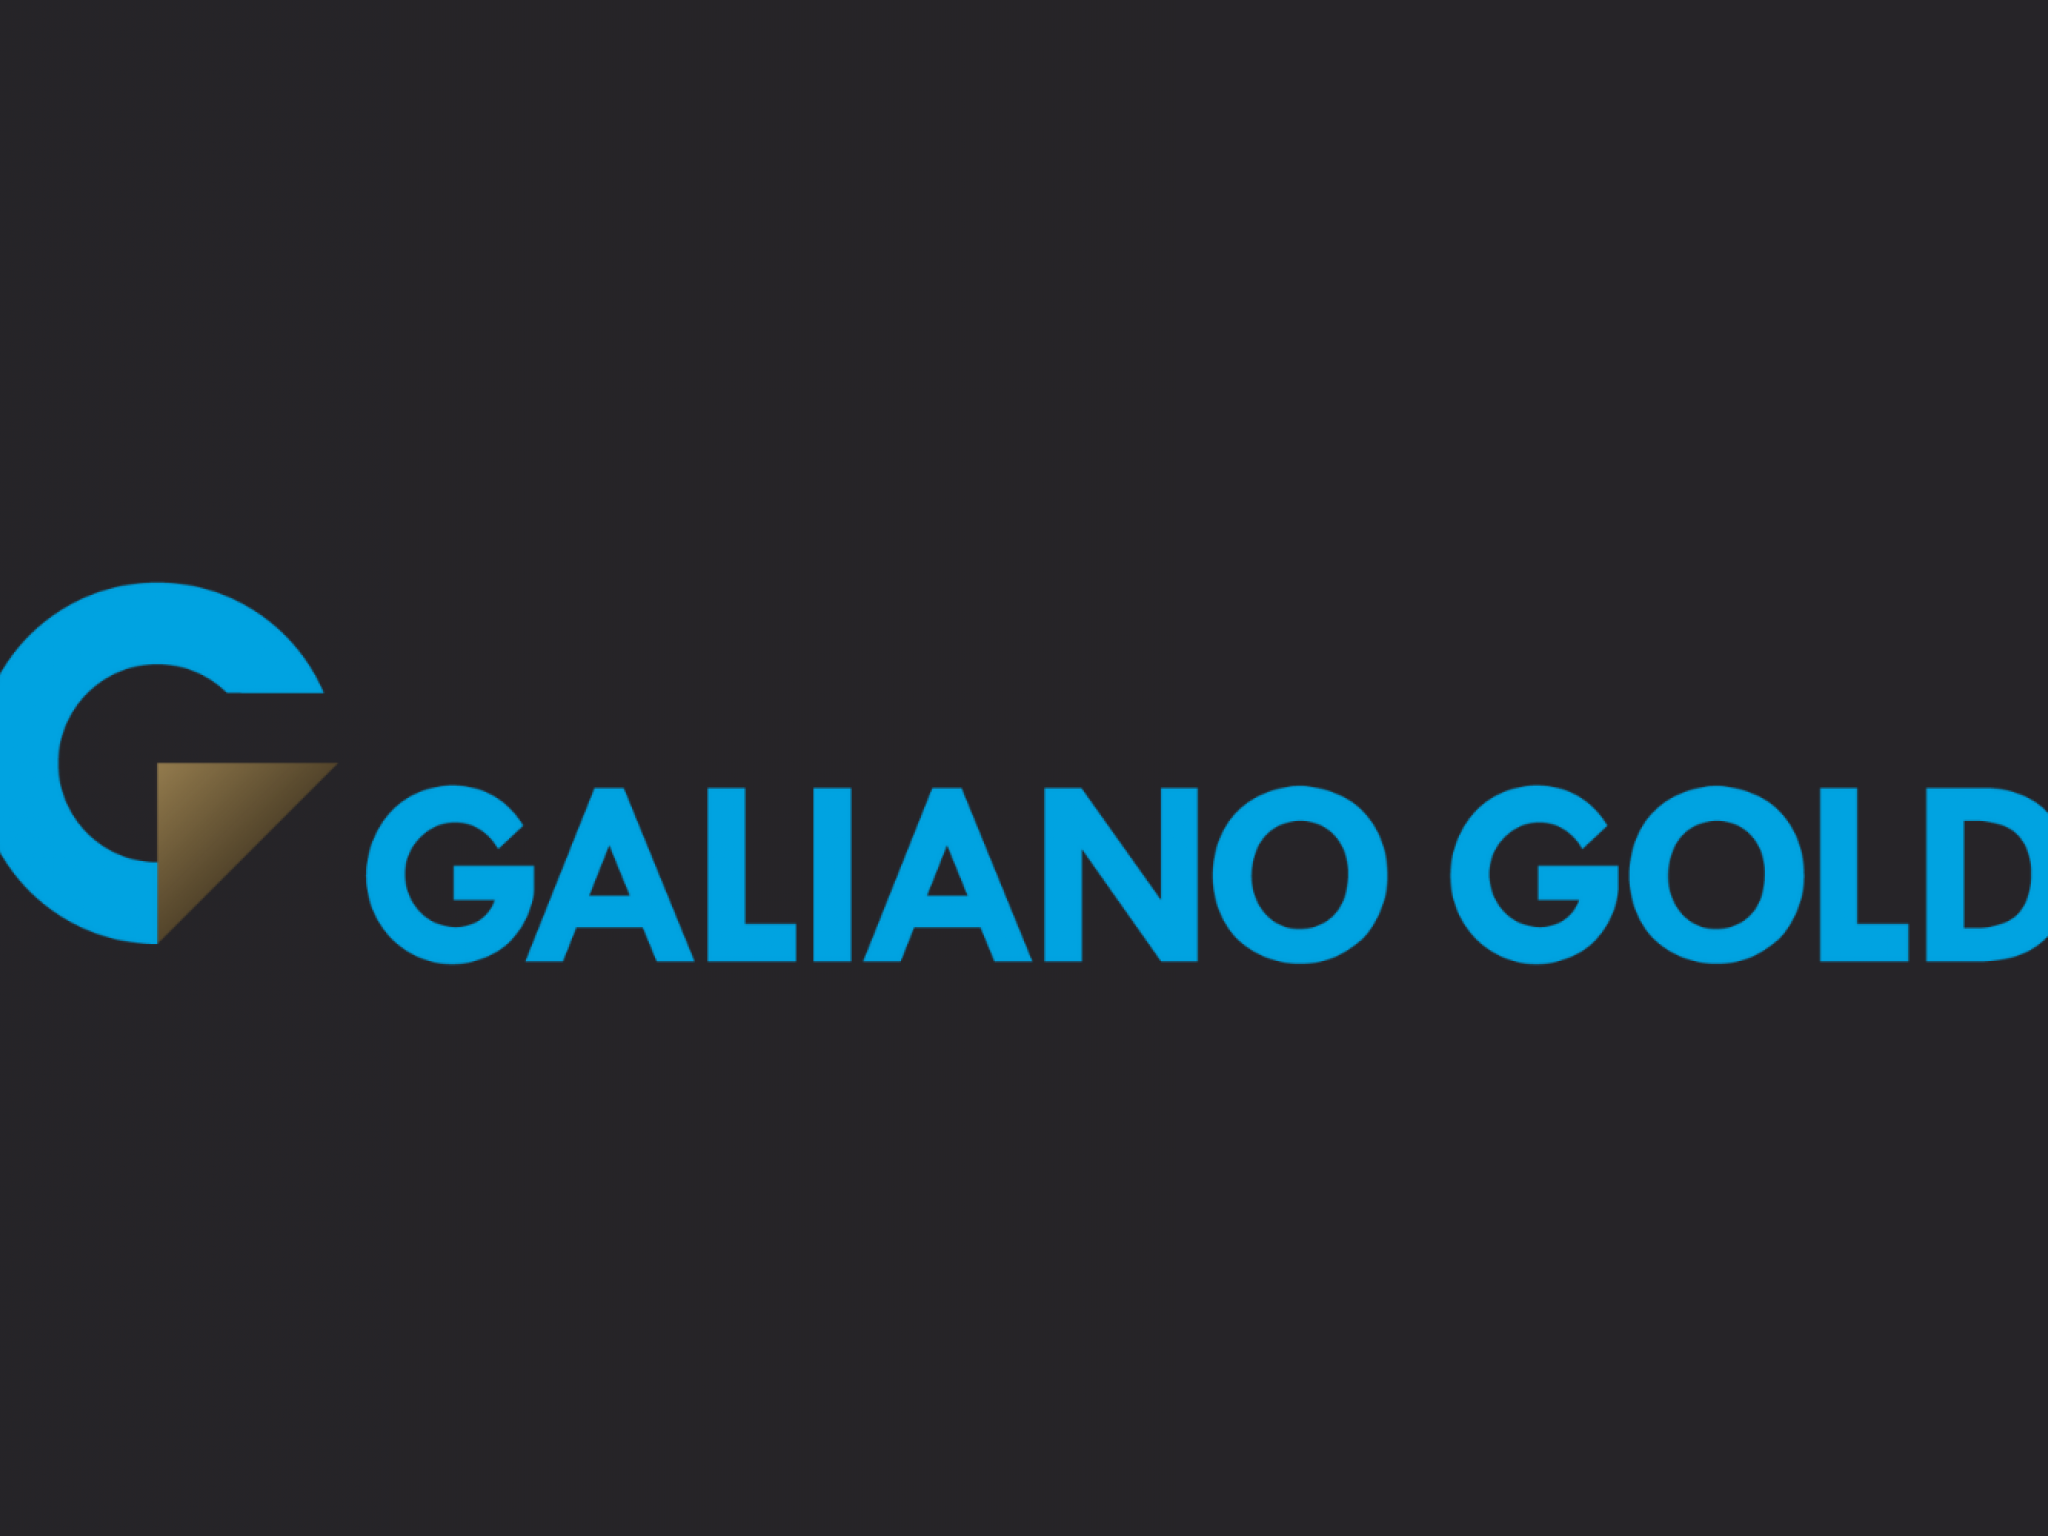  galiano-golds-promising-future-post-asanko-mine-deal-analyst-upgrades-stock 